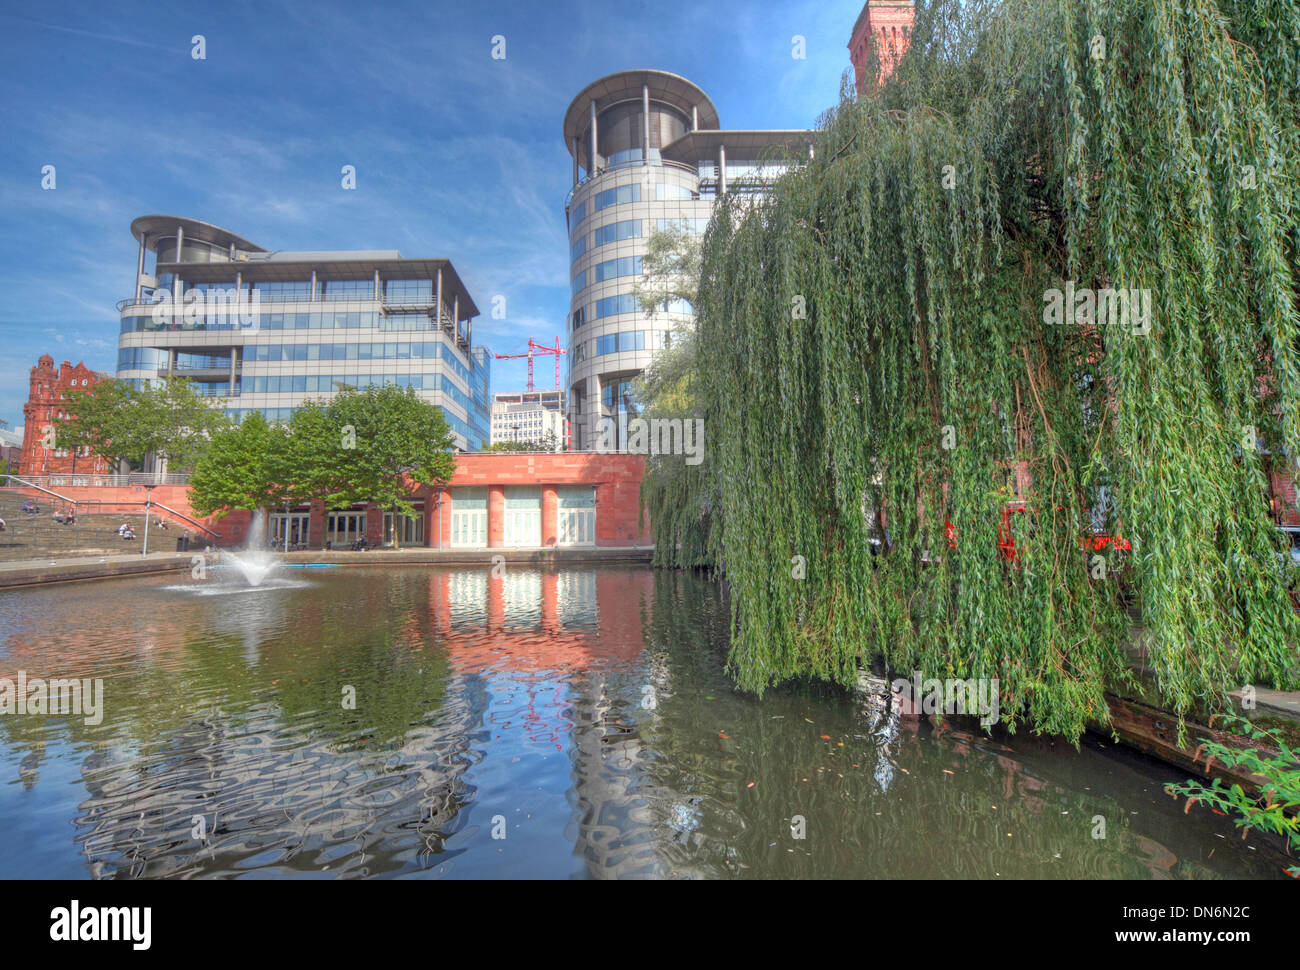 Prise de vue au grand angle de Bridgewater Hall & 101 Barbirolli Square Manchester, England UK avec des réflexions du bassin du canal Banque D'Images